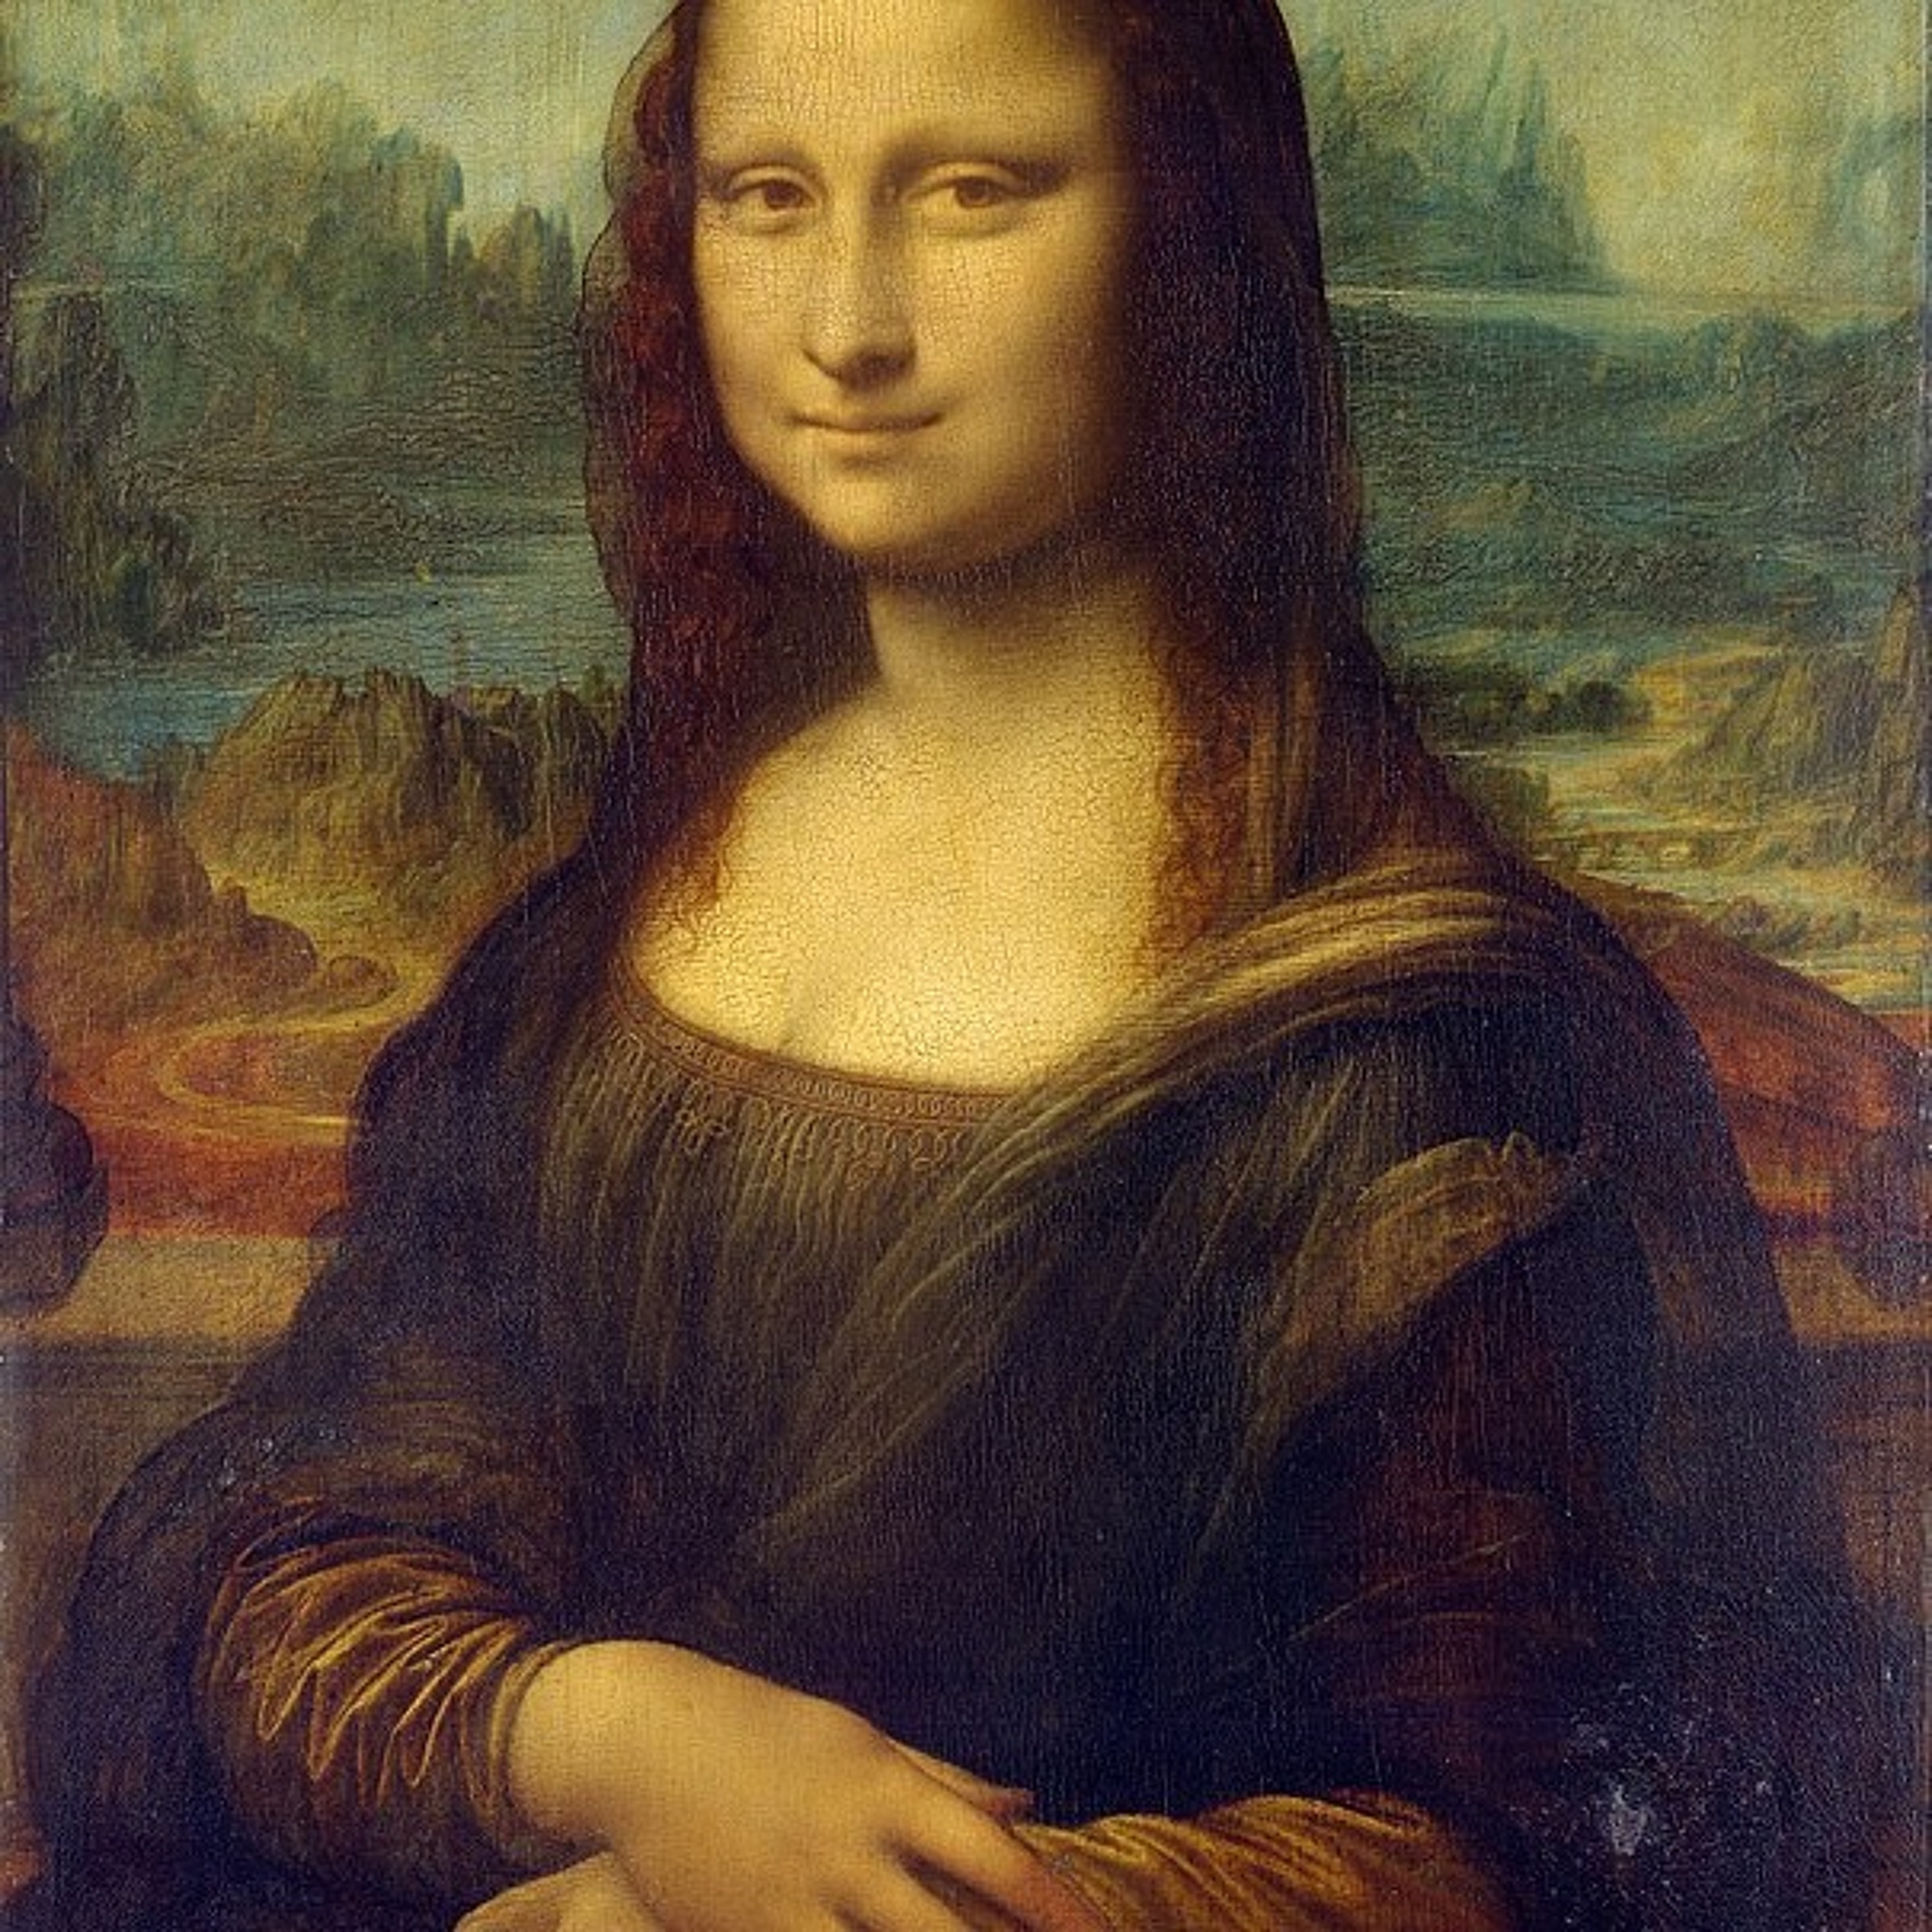 Ep. 25 - Mission: Mona Lisa